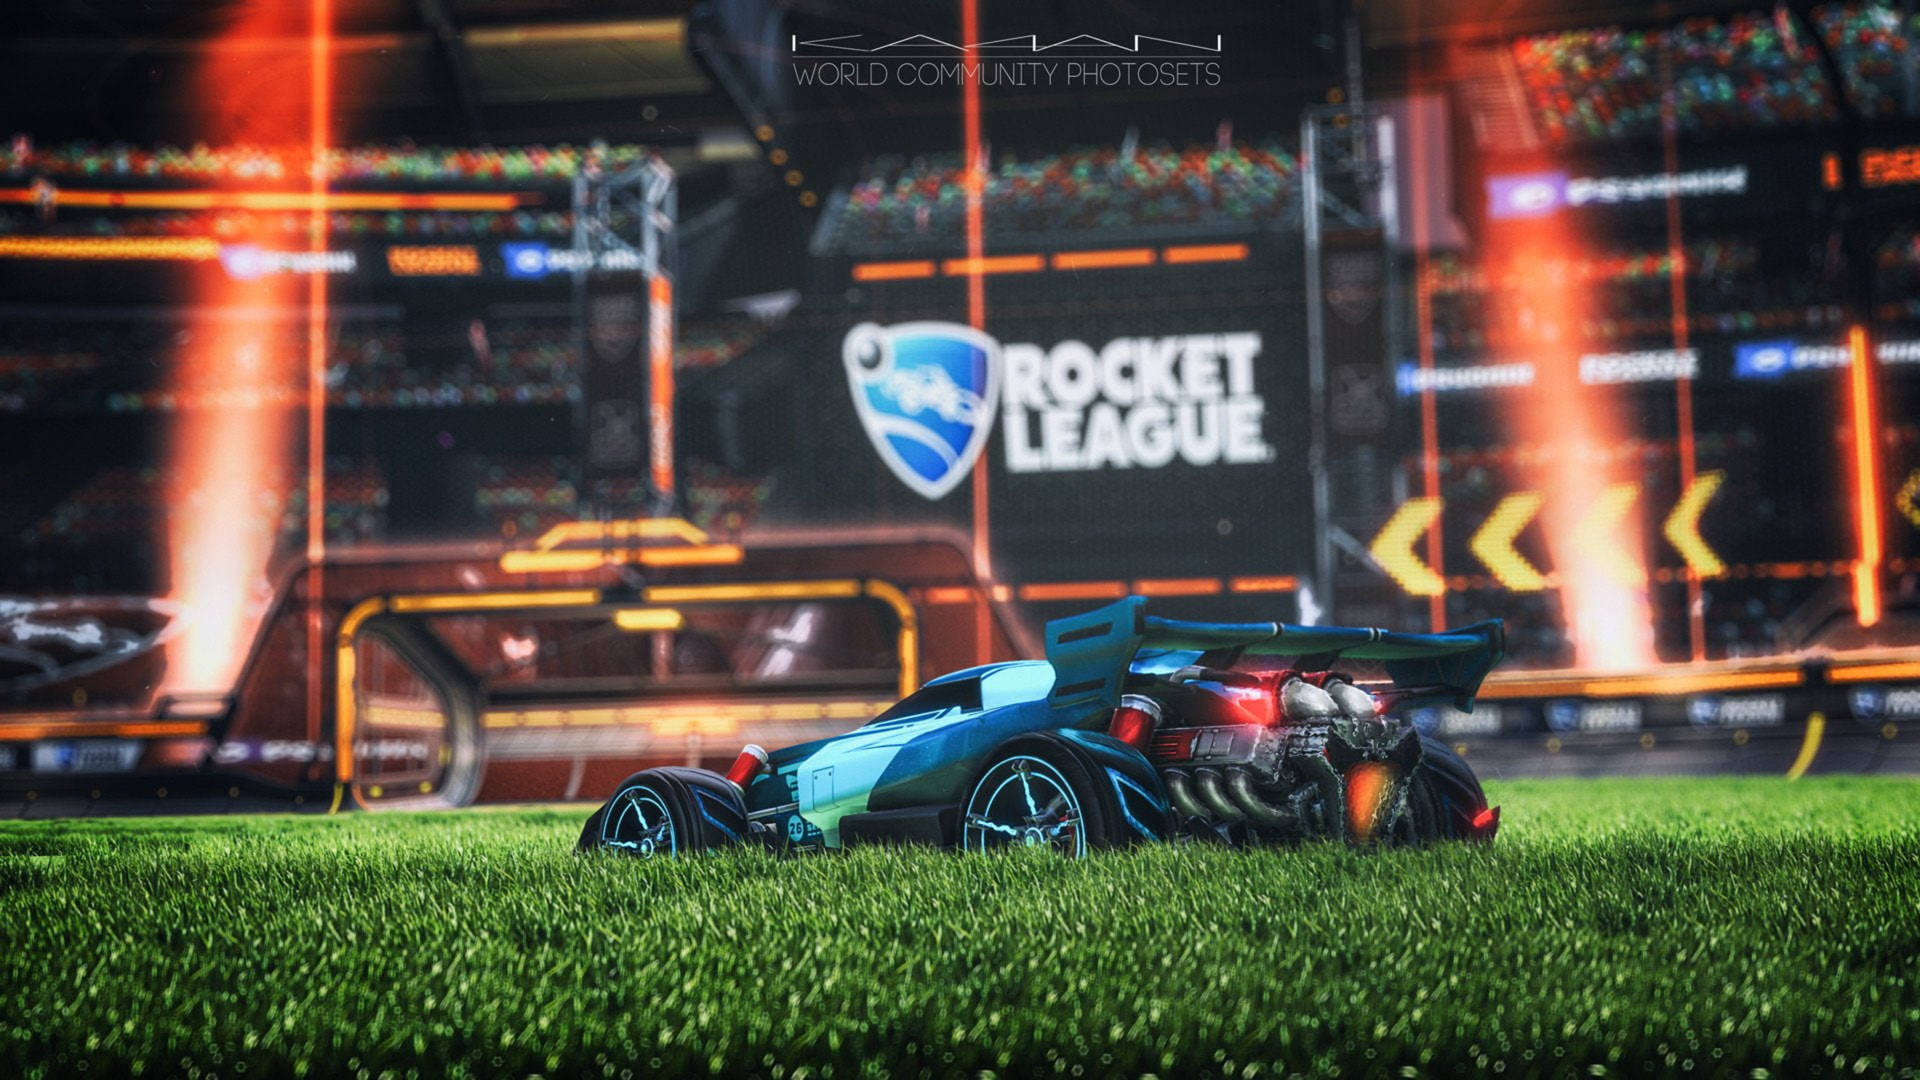 Rocket League Hd Car On Grass